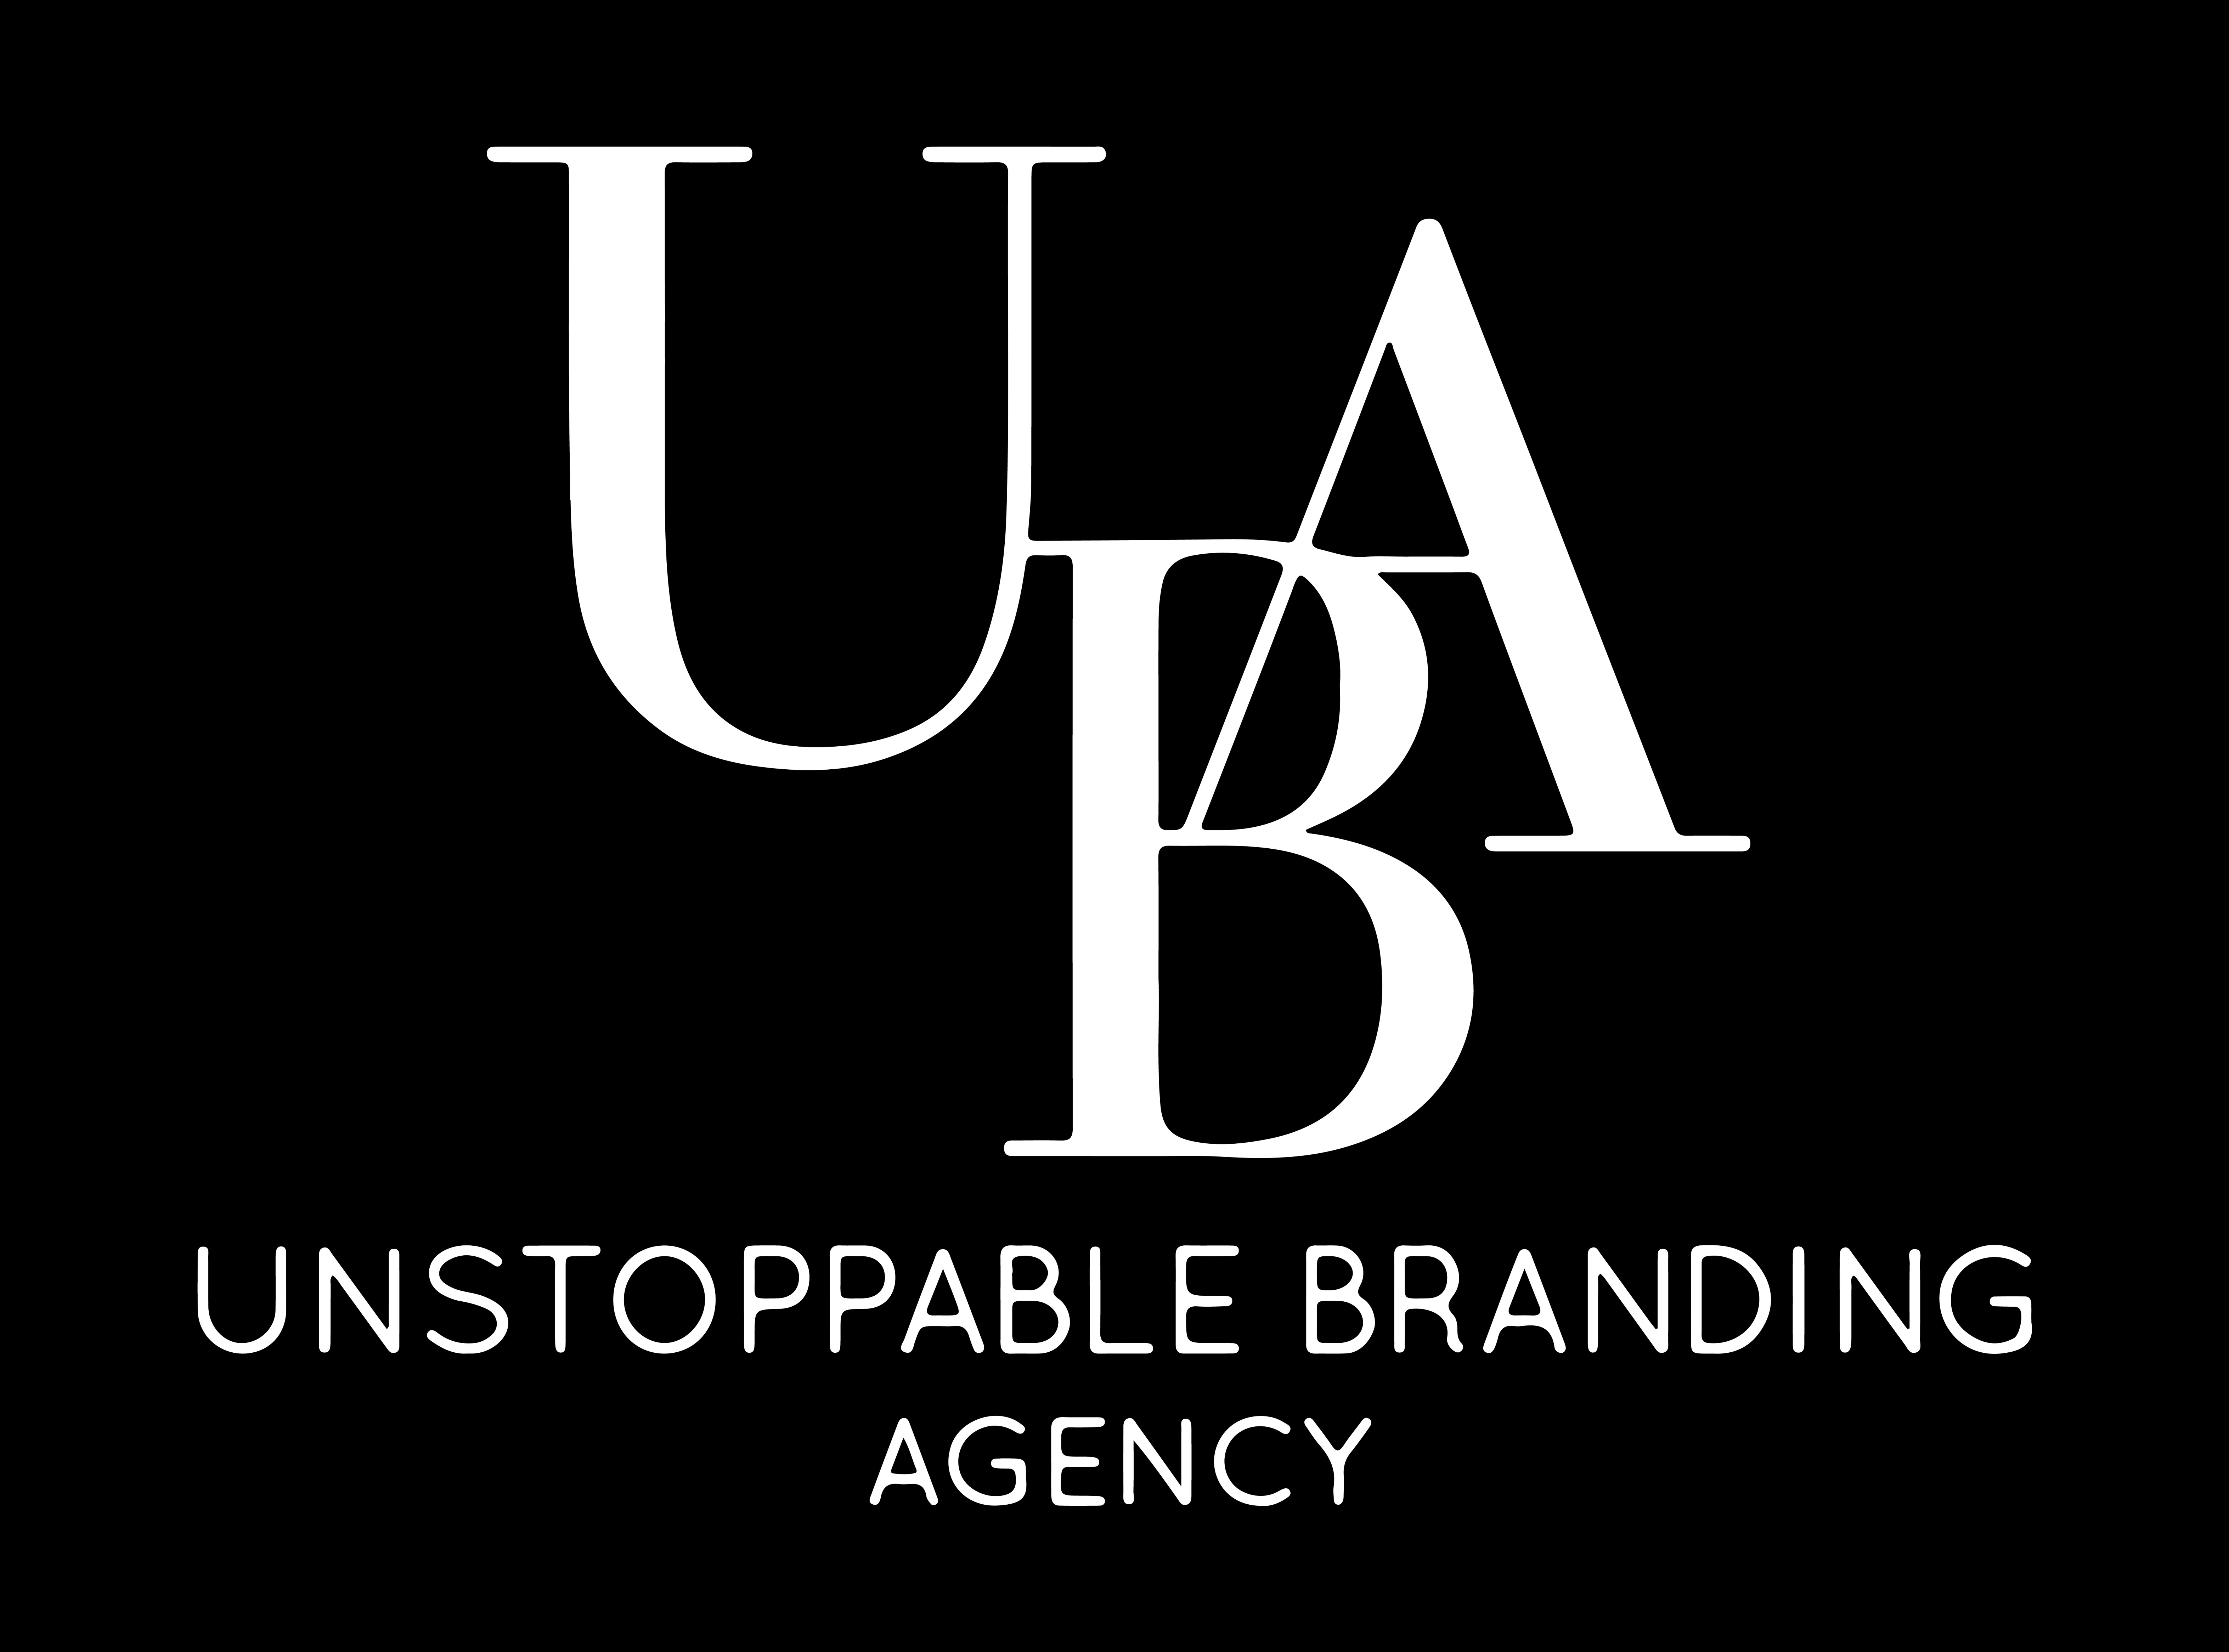 Unstoppable Branding Agency